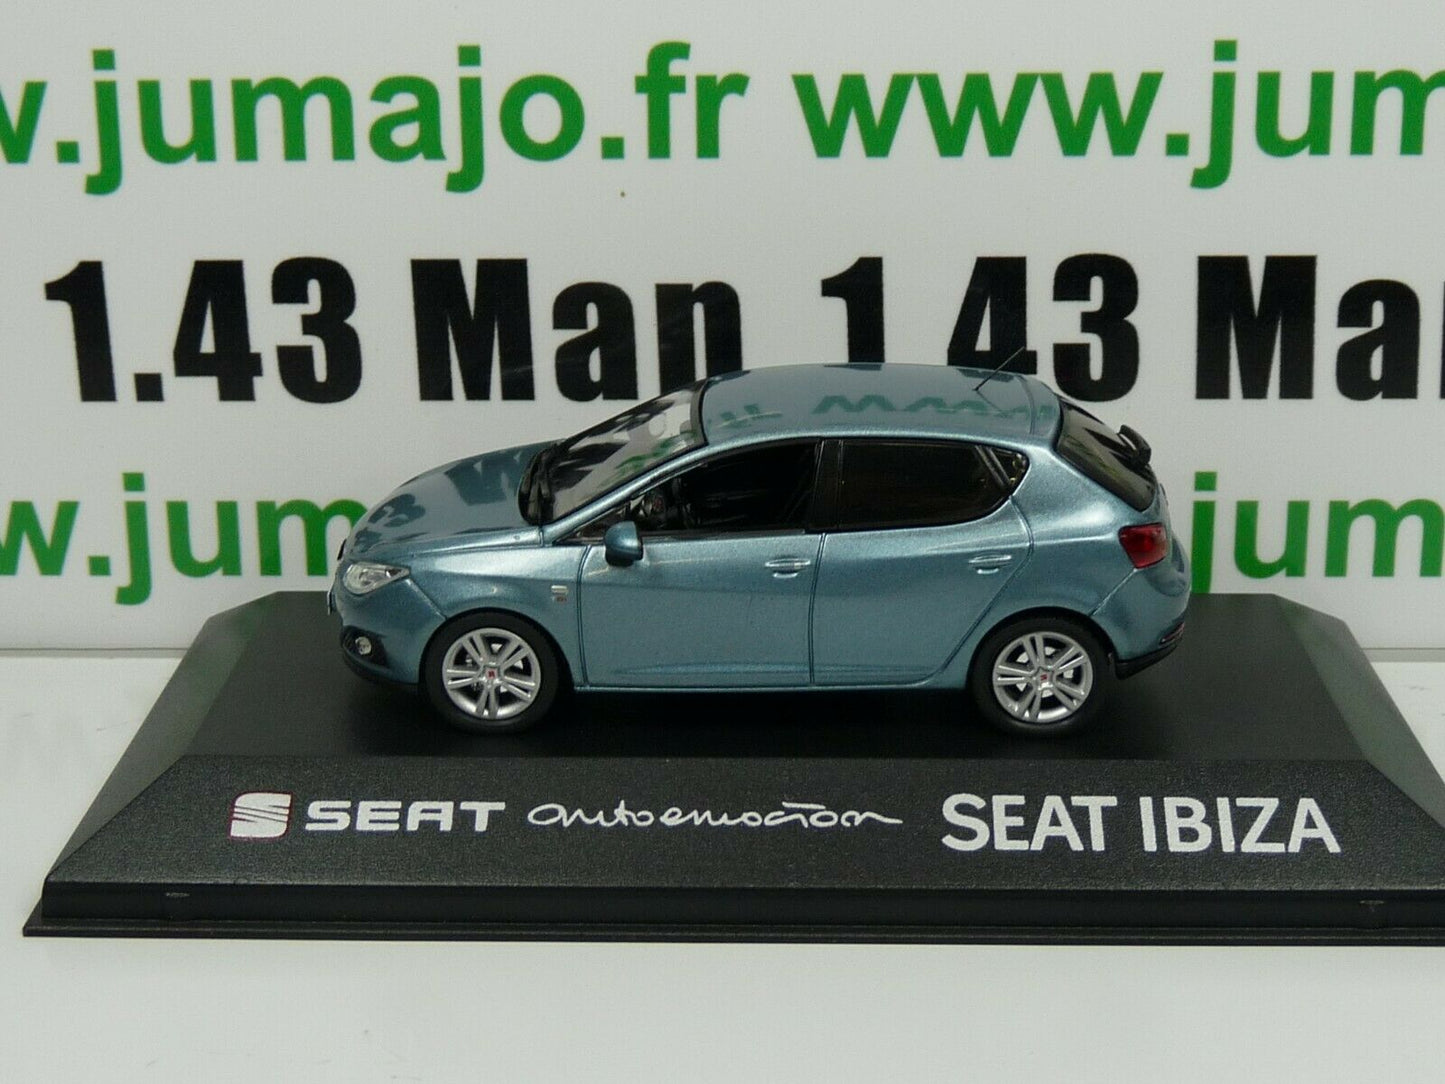 SEA19 : SEAT dealer models Fischer : new IBIZA Atul nayarra